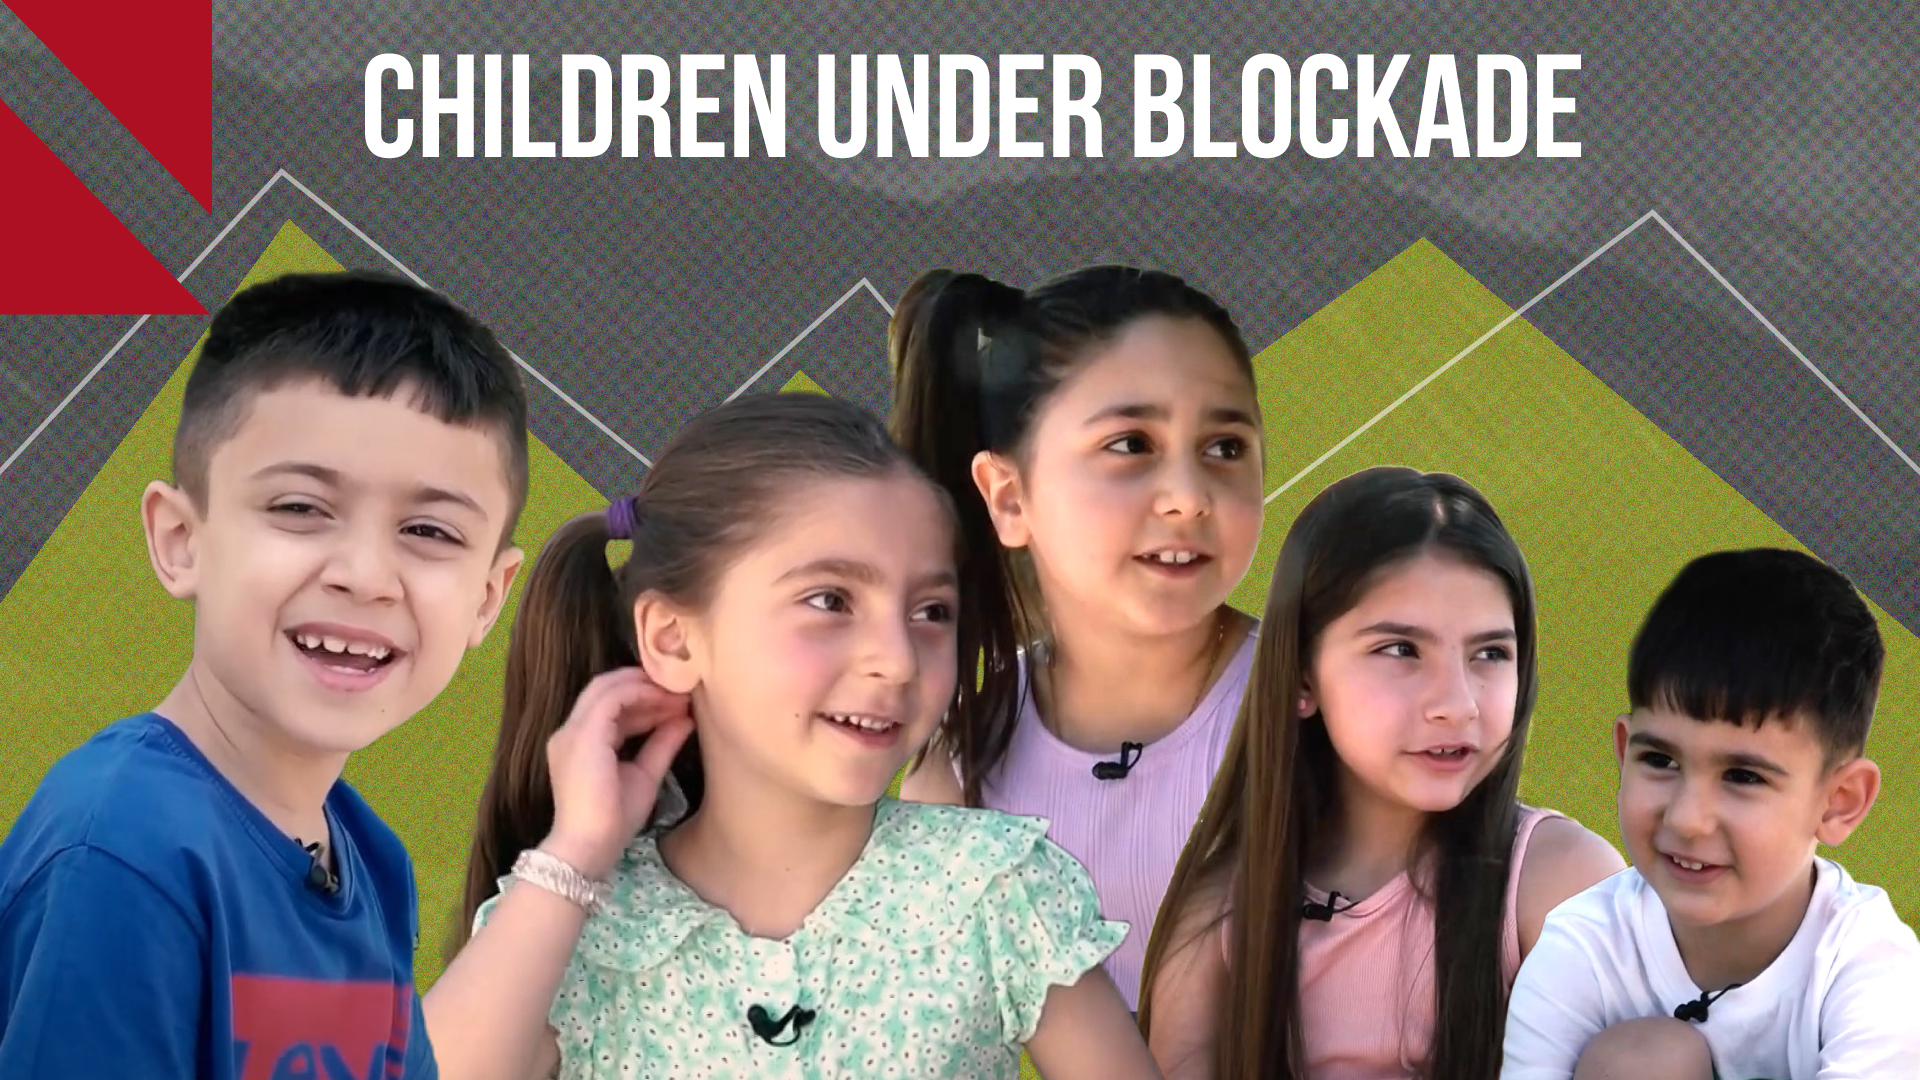 Artsakh children react to the blockade